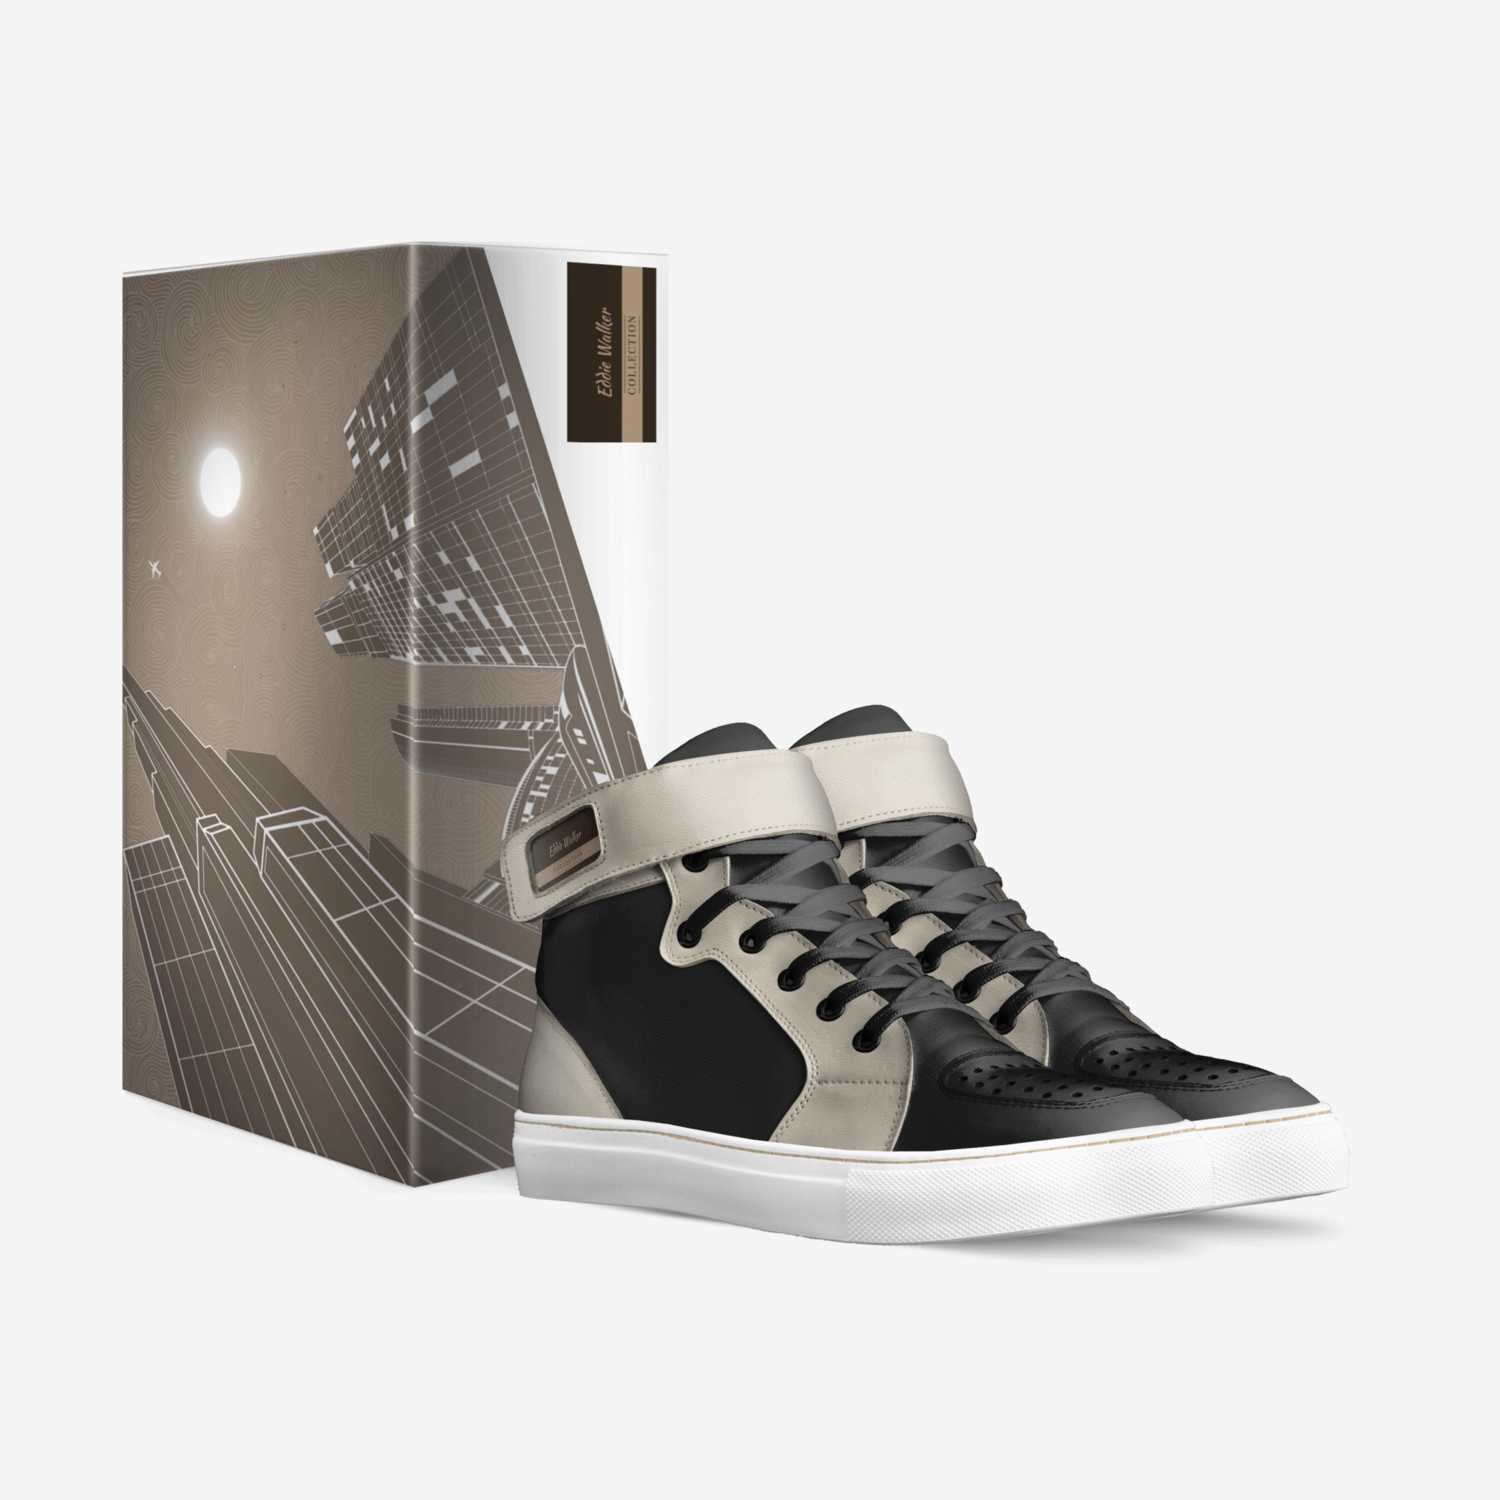 Eddie Walker custom made in Italy shoes by Eddie Walker | Box view